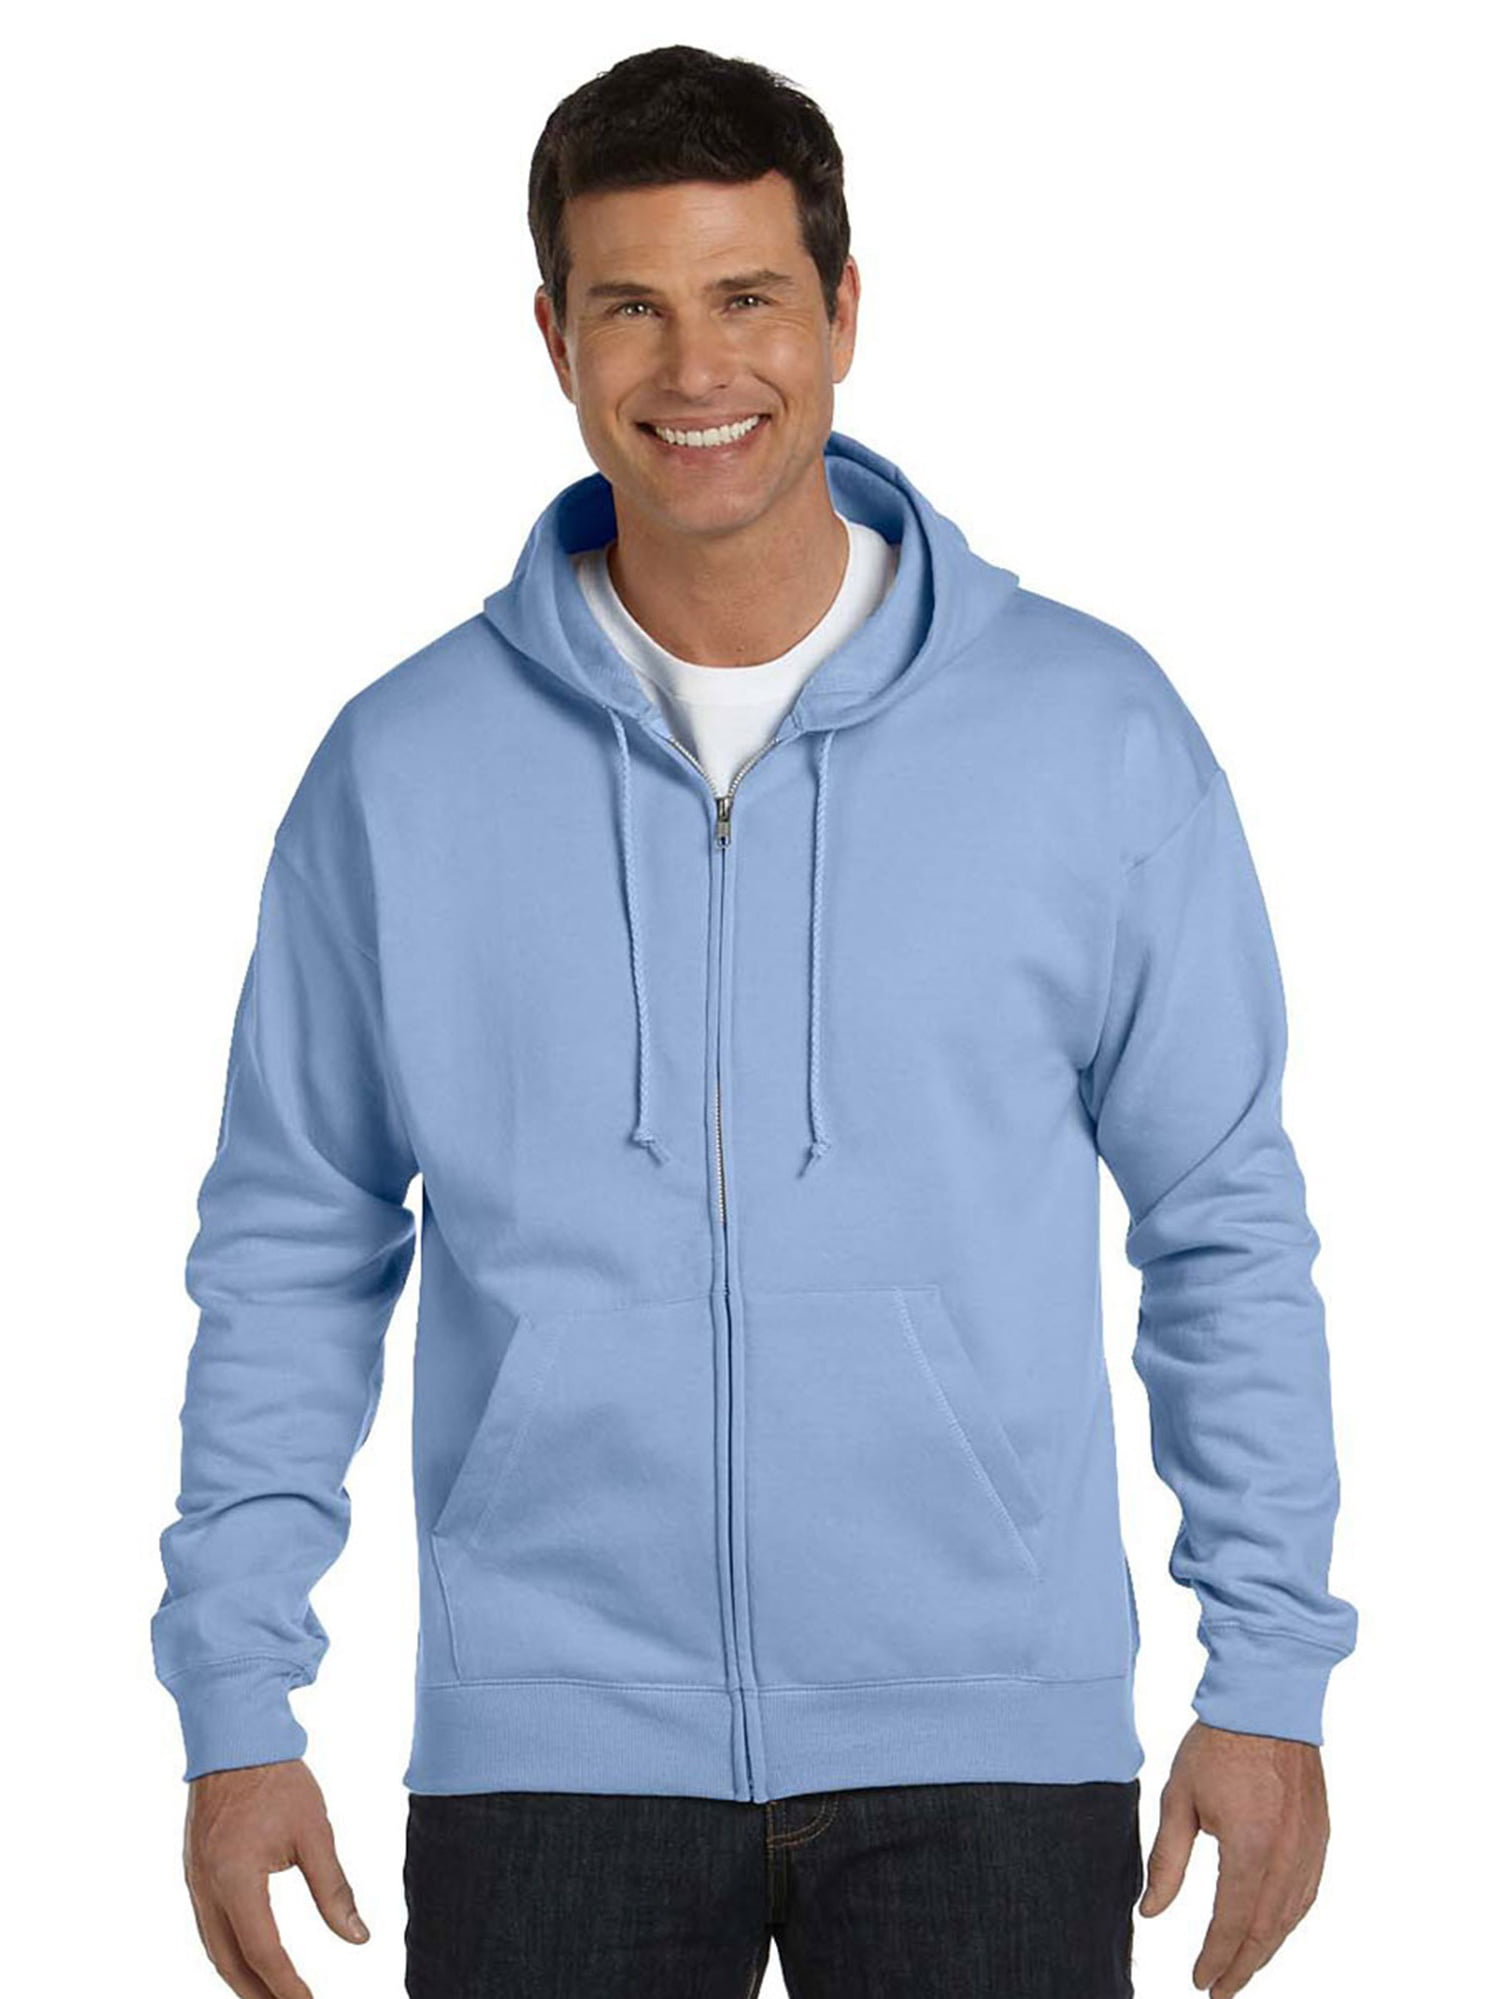 Hanes Men's EcoSmart Full Zip Hooded Sweatshirt - Walmart.com